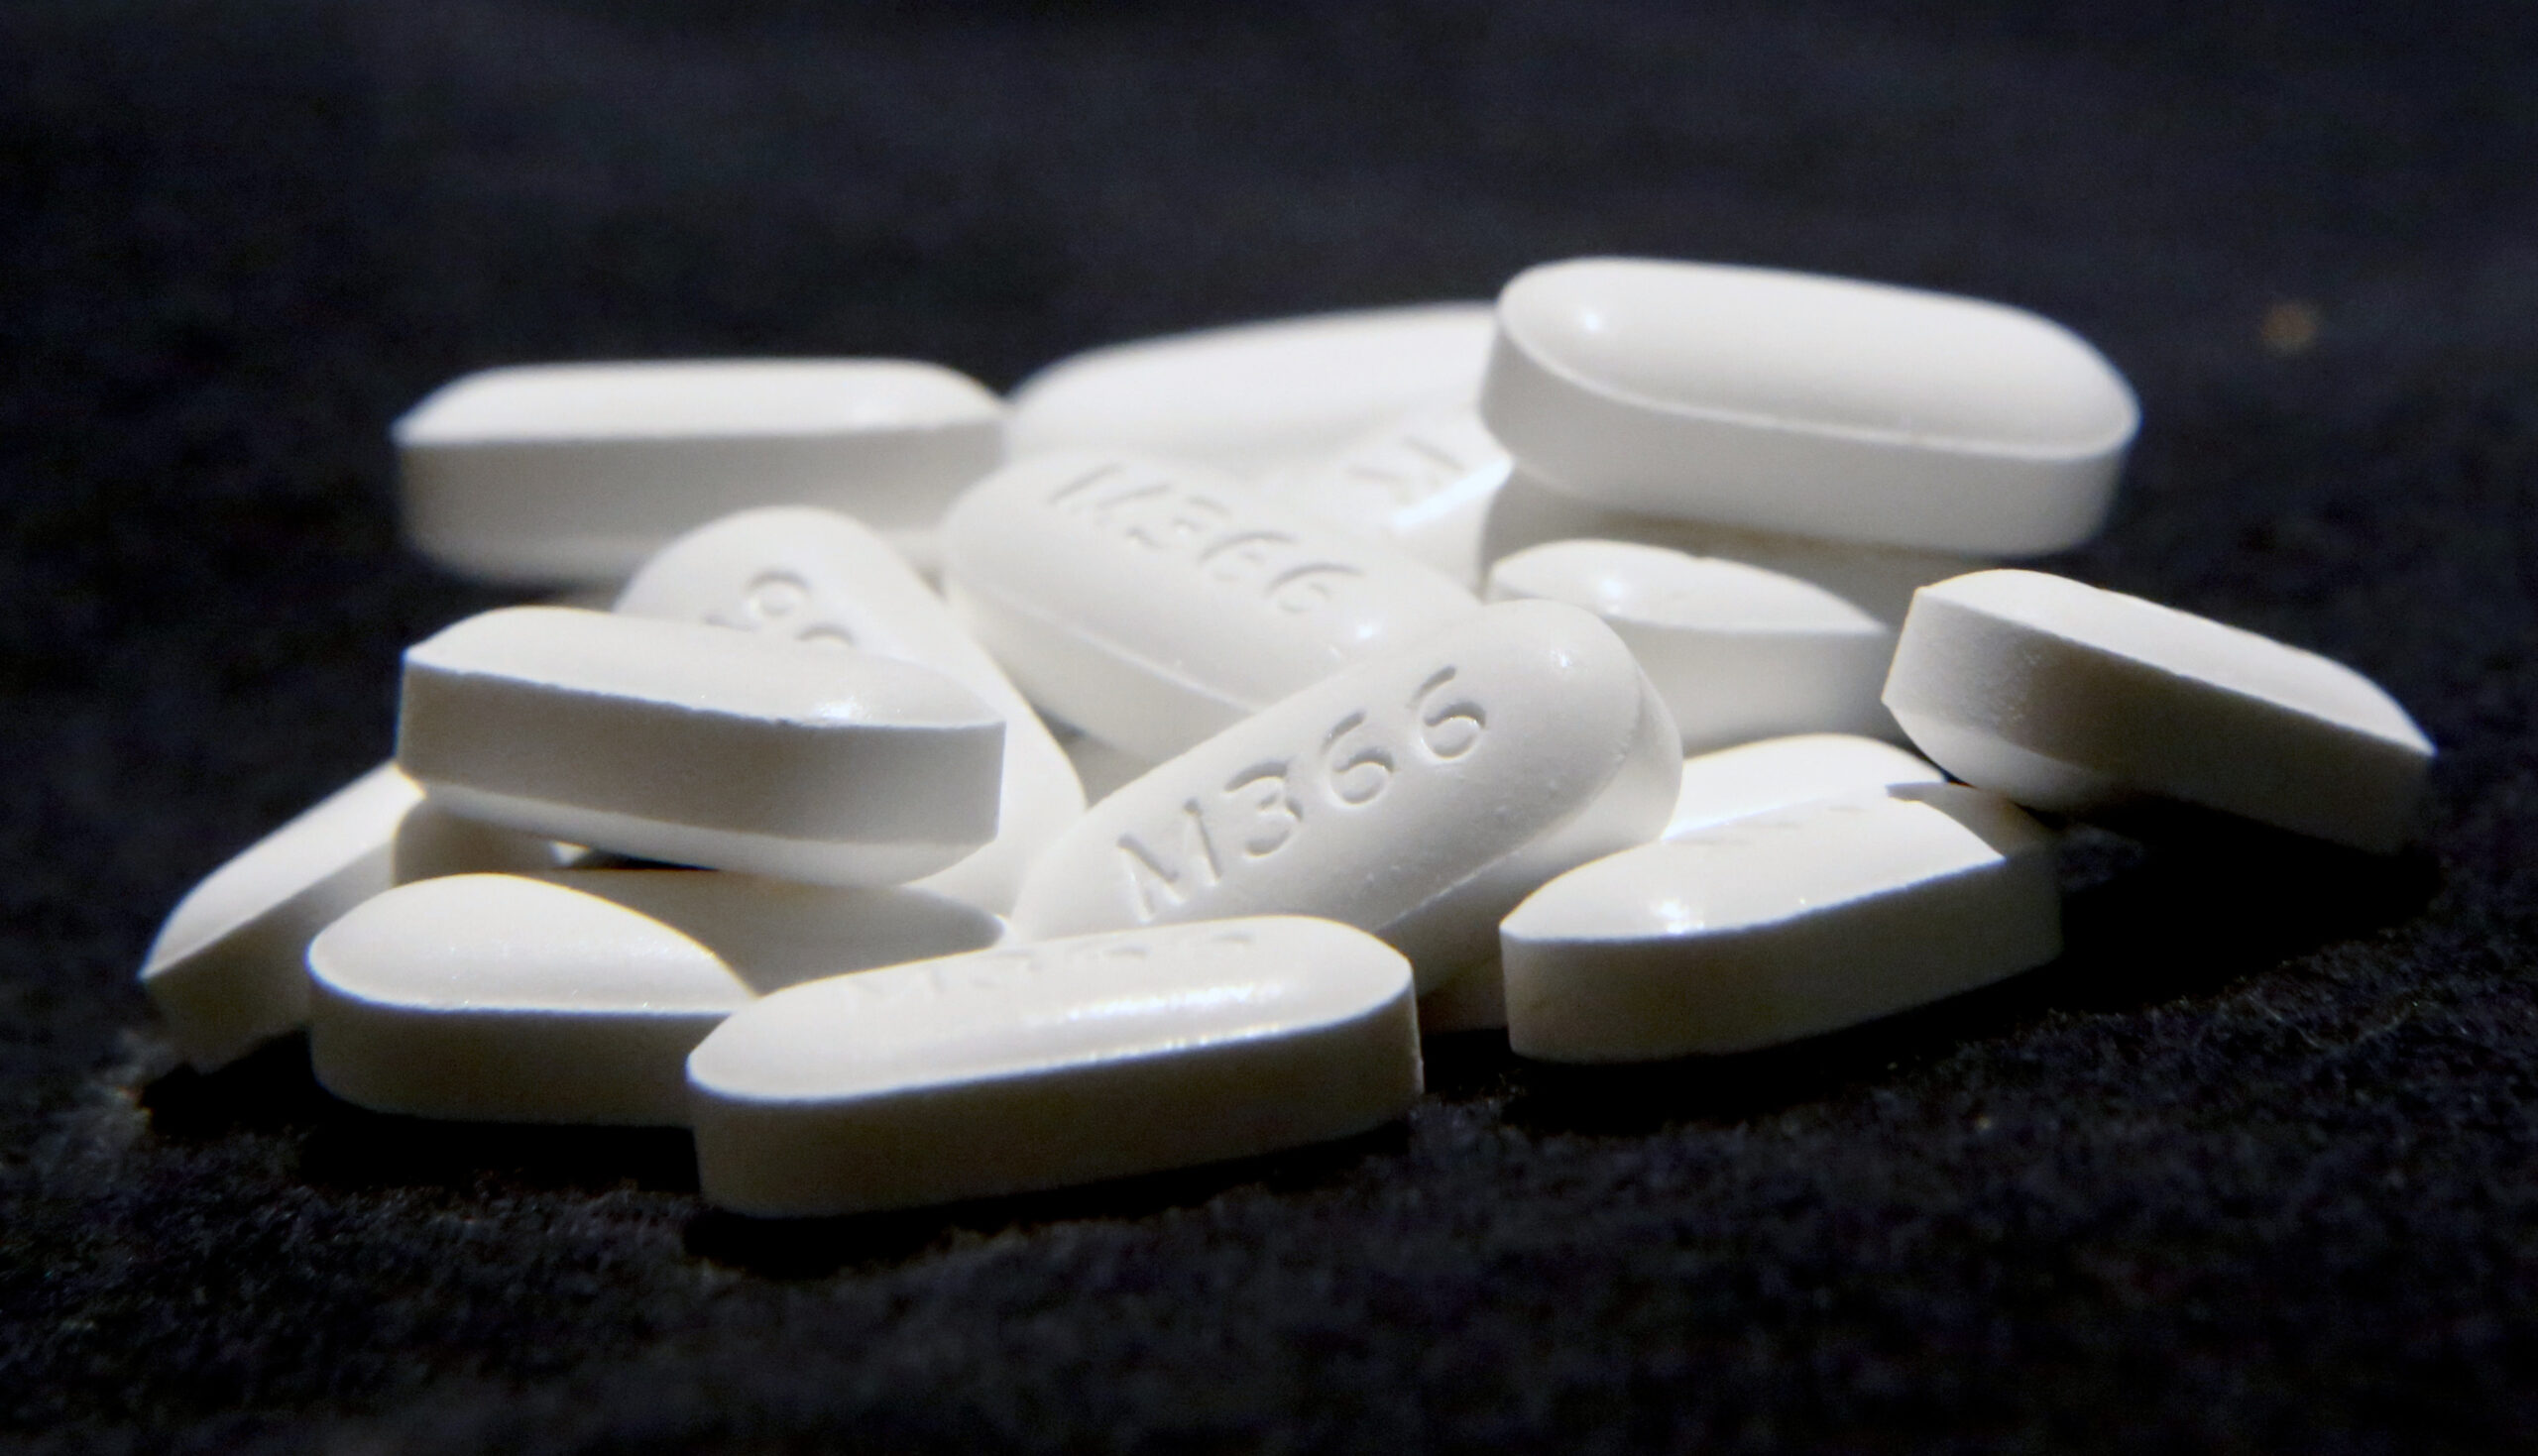 Hydrocodone Acetaminophen pills, opioid prescription